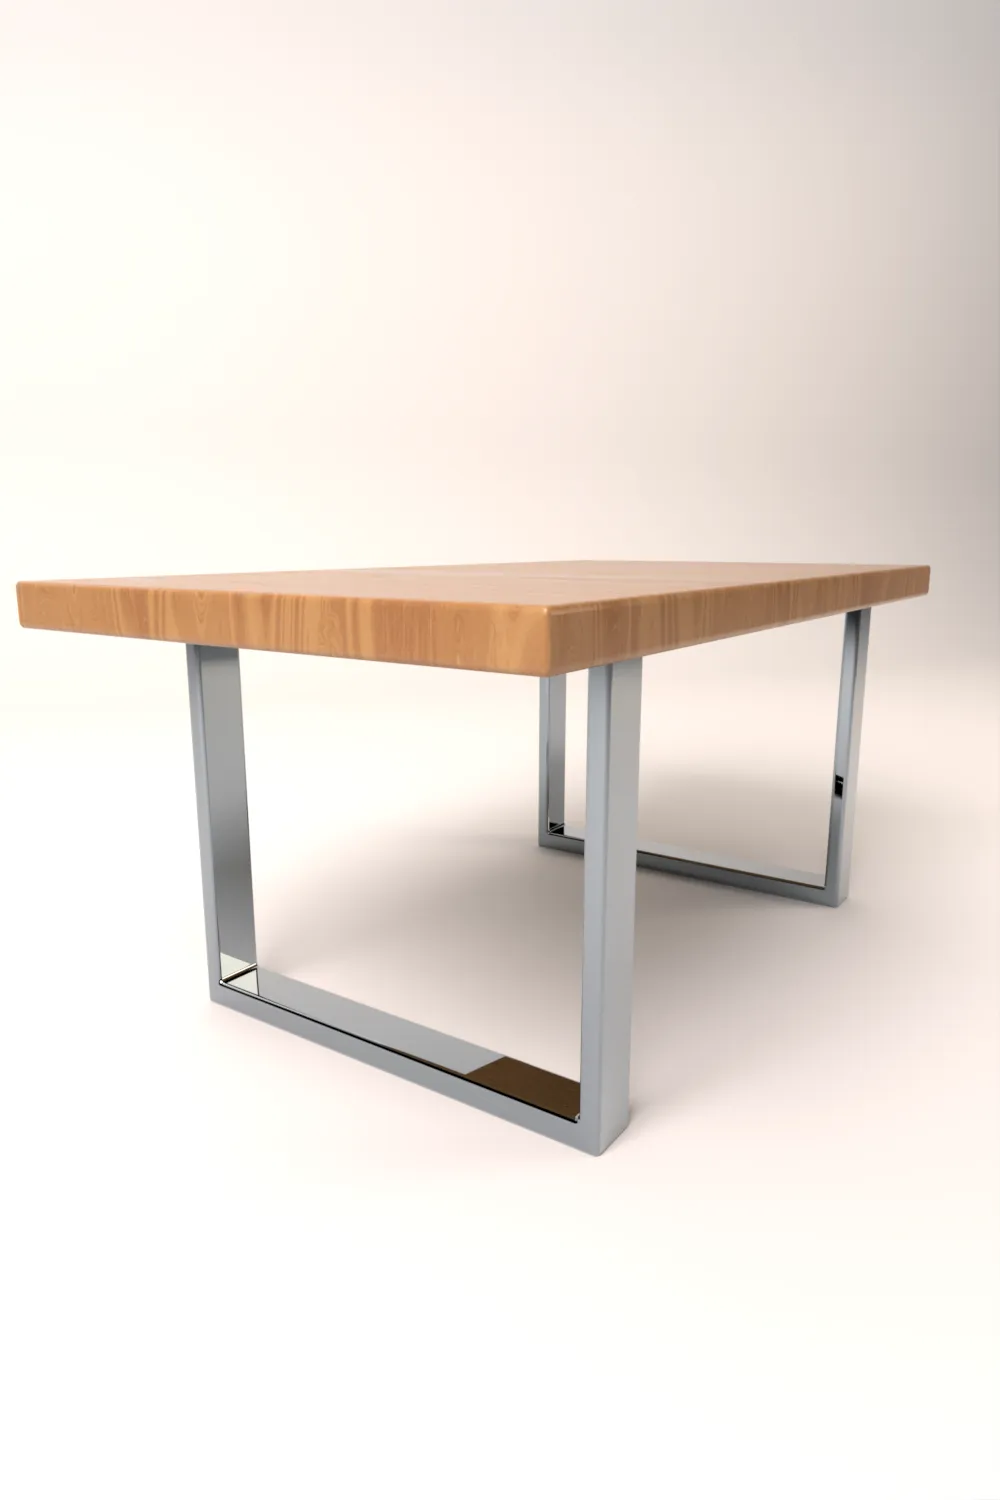 3D modellierter Esstisch in Holzoptik mit verchromten Tischbeinen